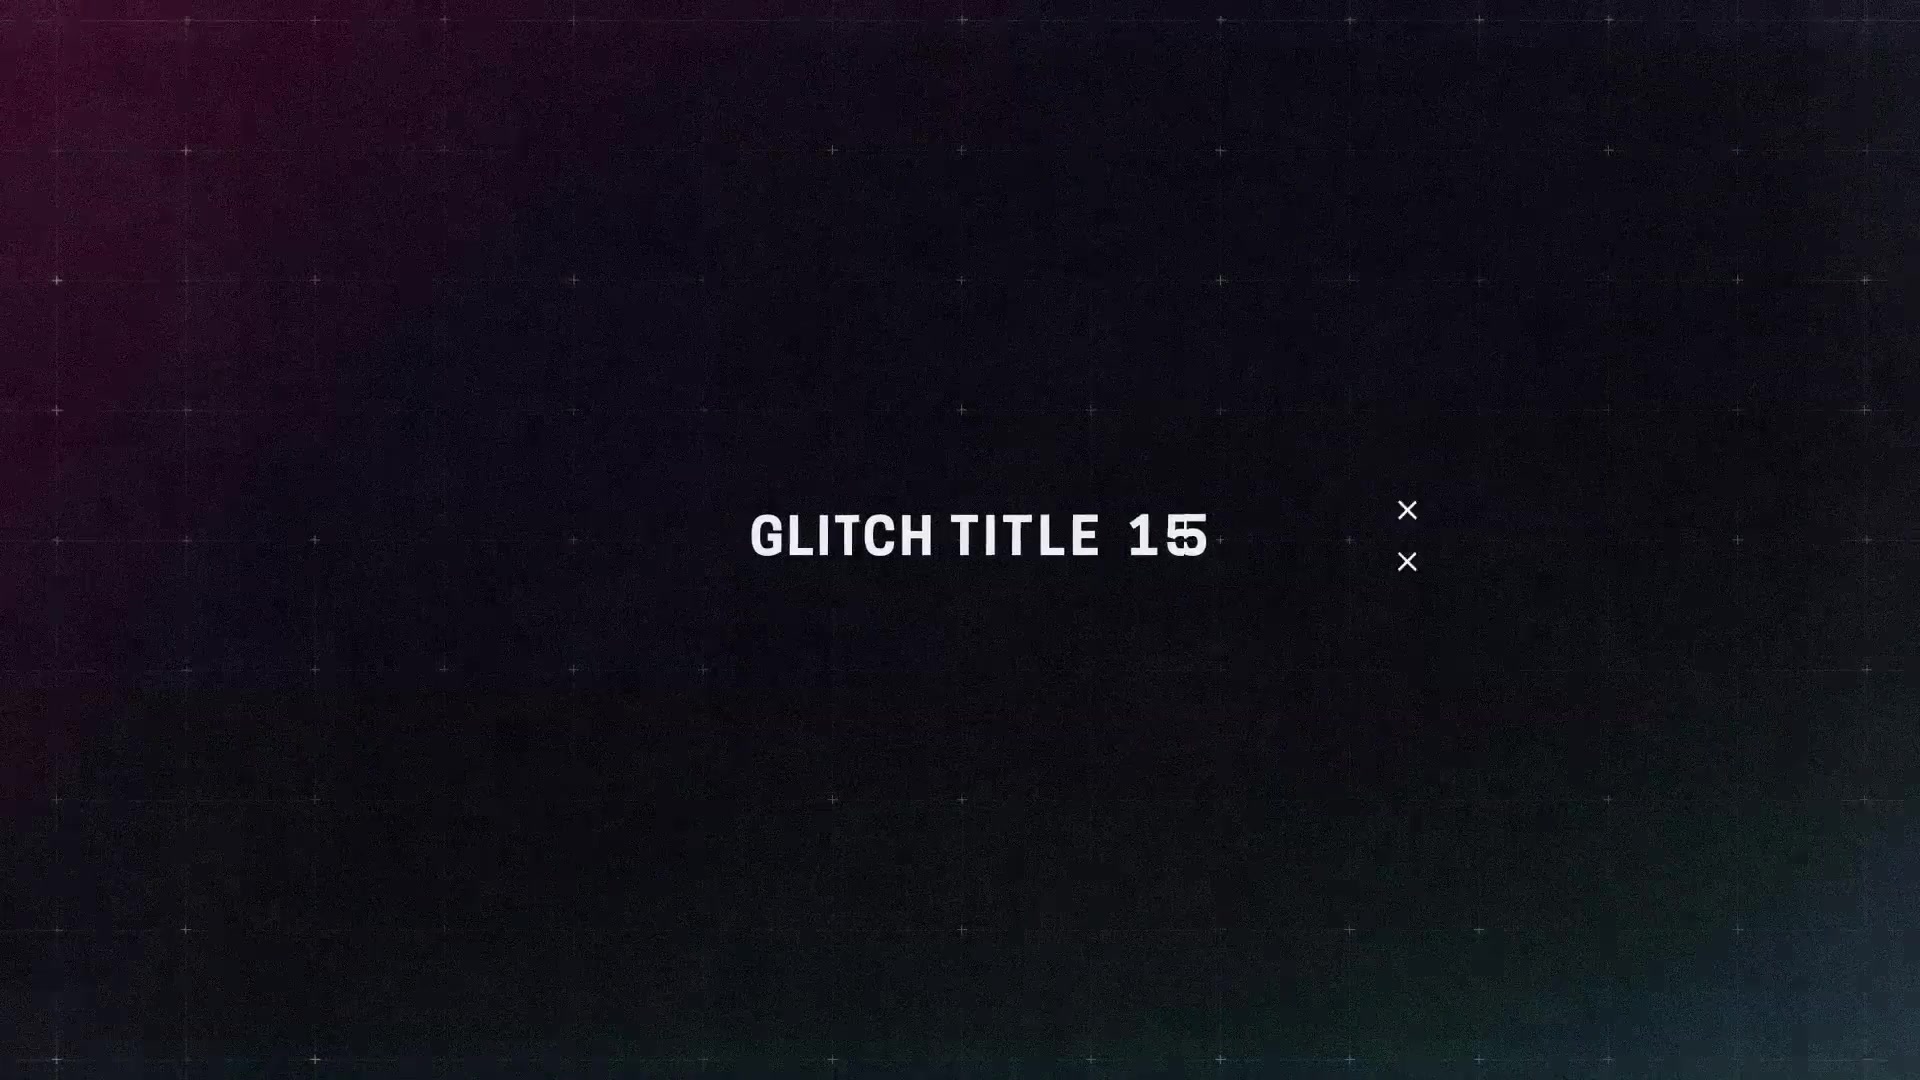 Glitch Titles Videohive 23383086 Premiere Pro Image 10